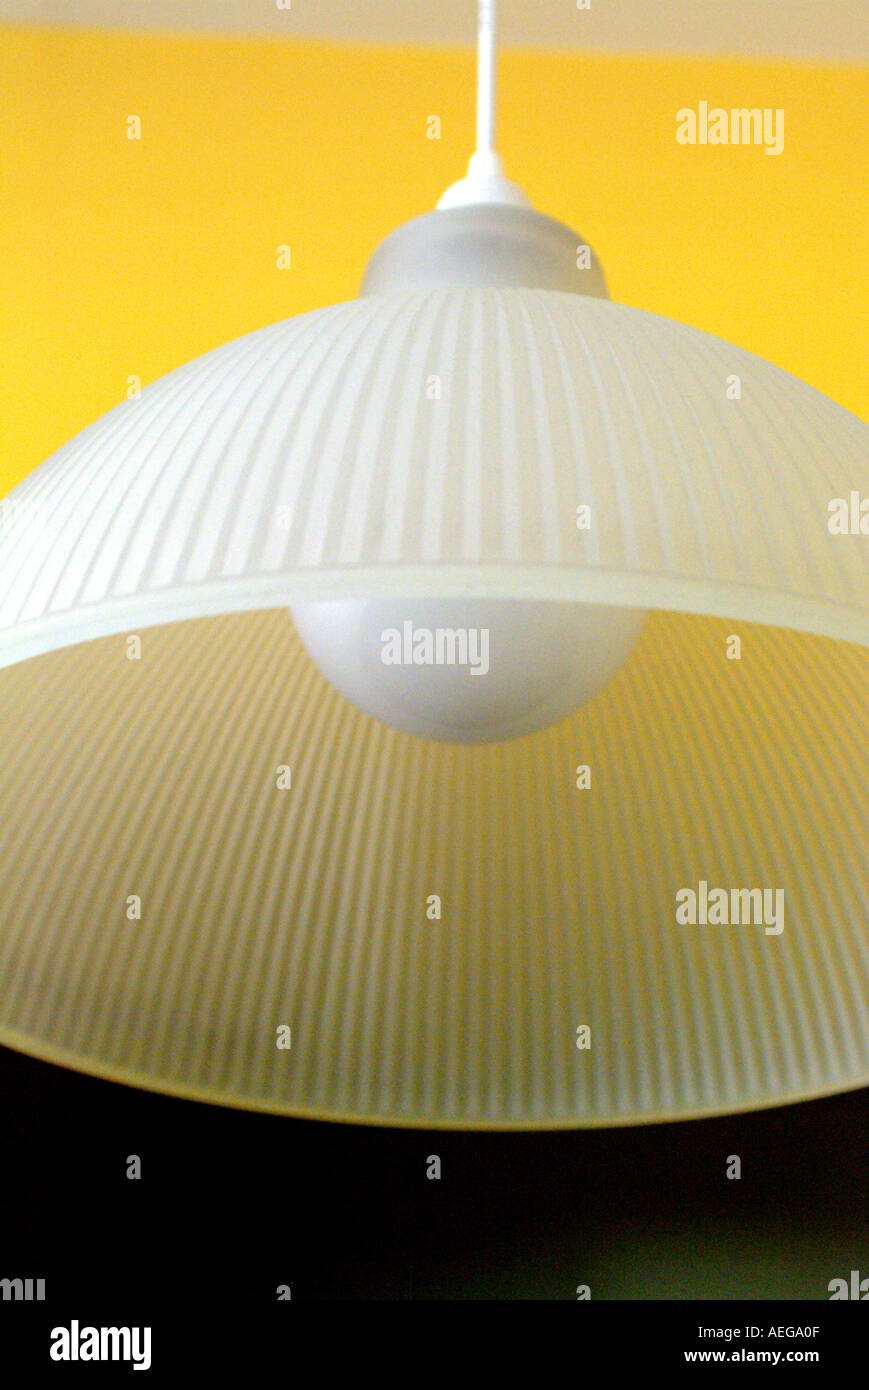 Sweet Home Dach hängende Lampe Lampenschirm weiß Traslucid transparent Beleuchtung Lichtenergie elektrische Deko Dekoration Örn Stockfoto